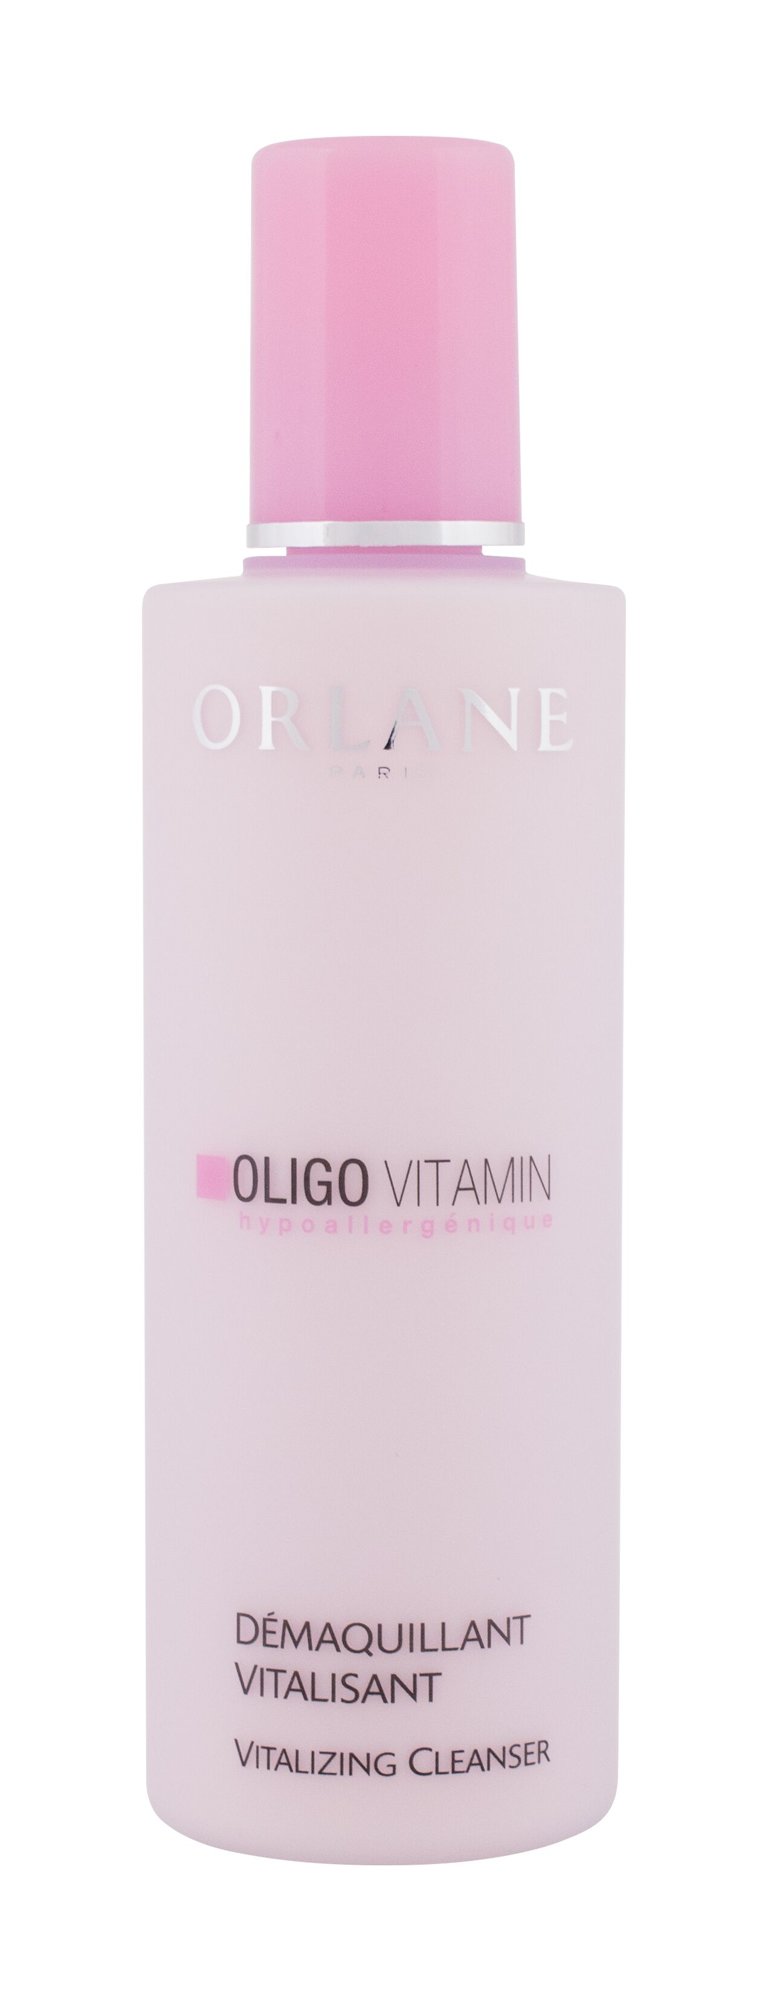 Orlane Oligo Vitamin Vitalizing Cleanser veido pienelis 